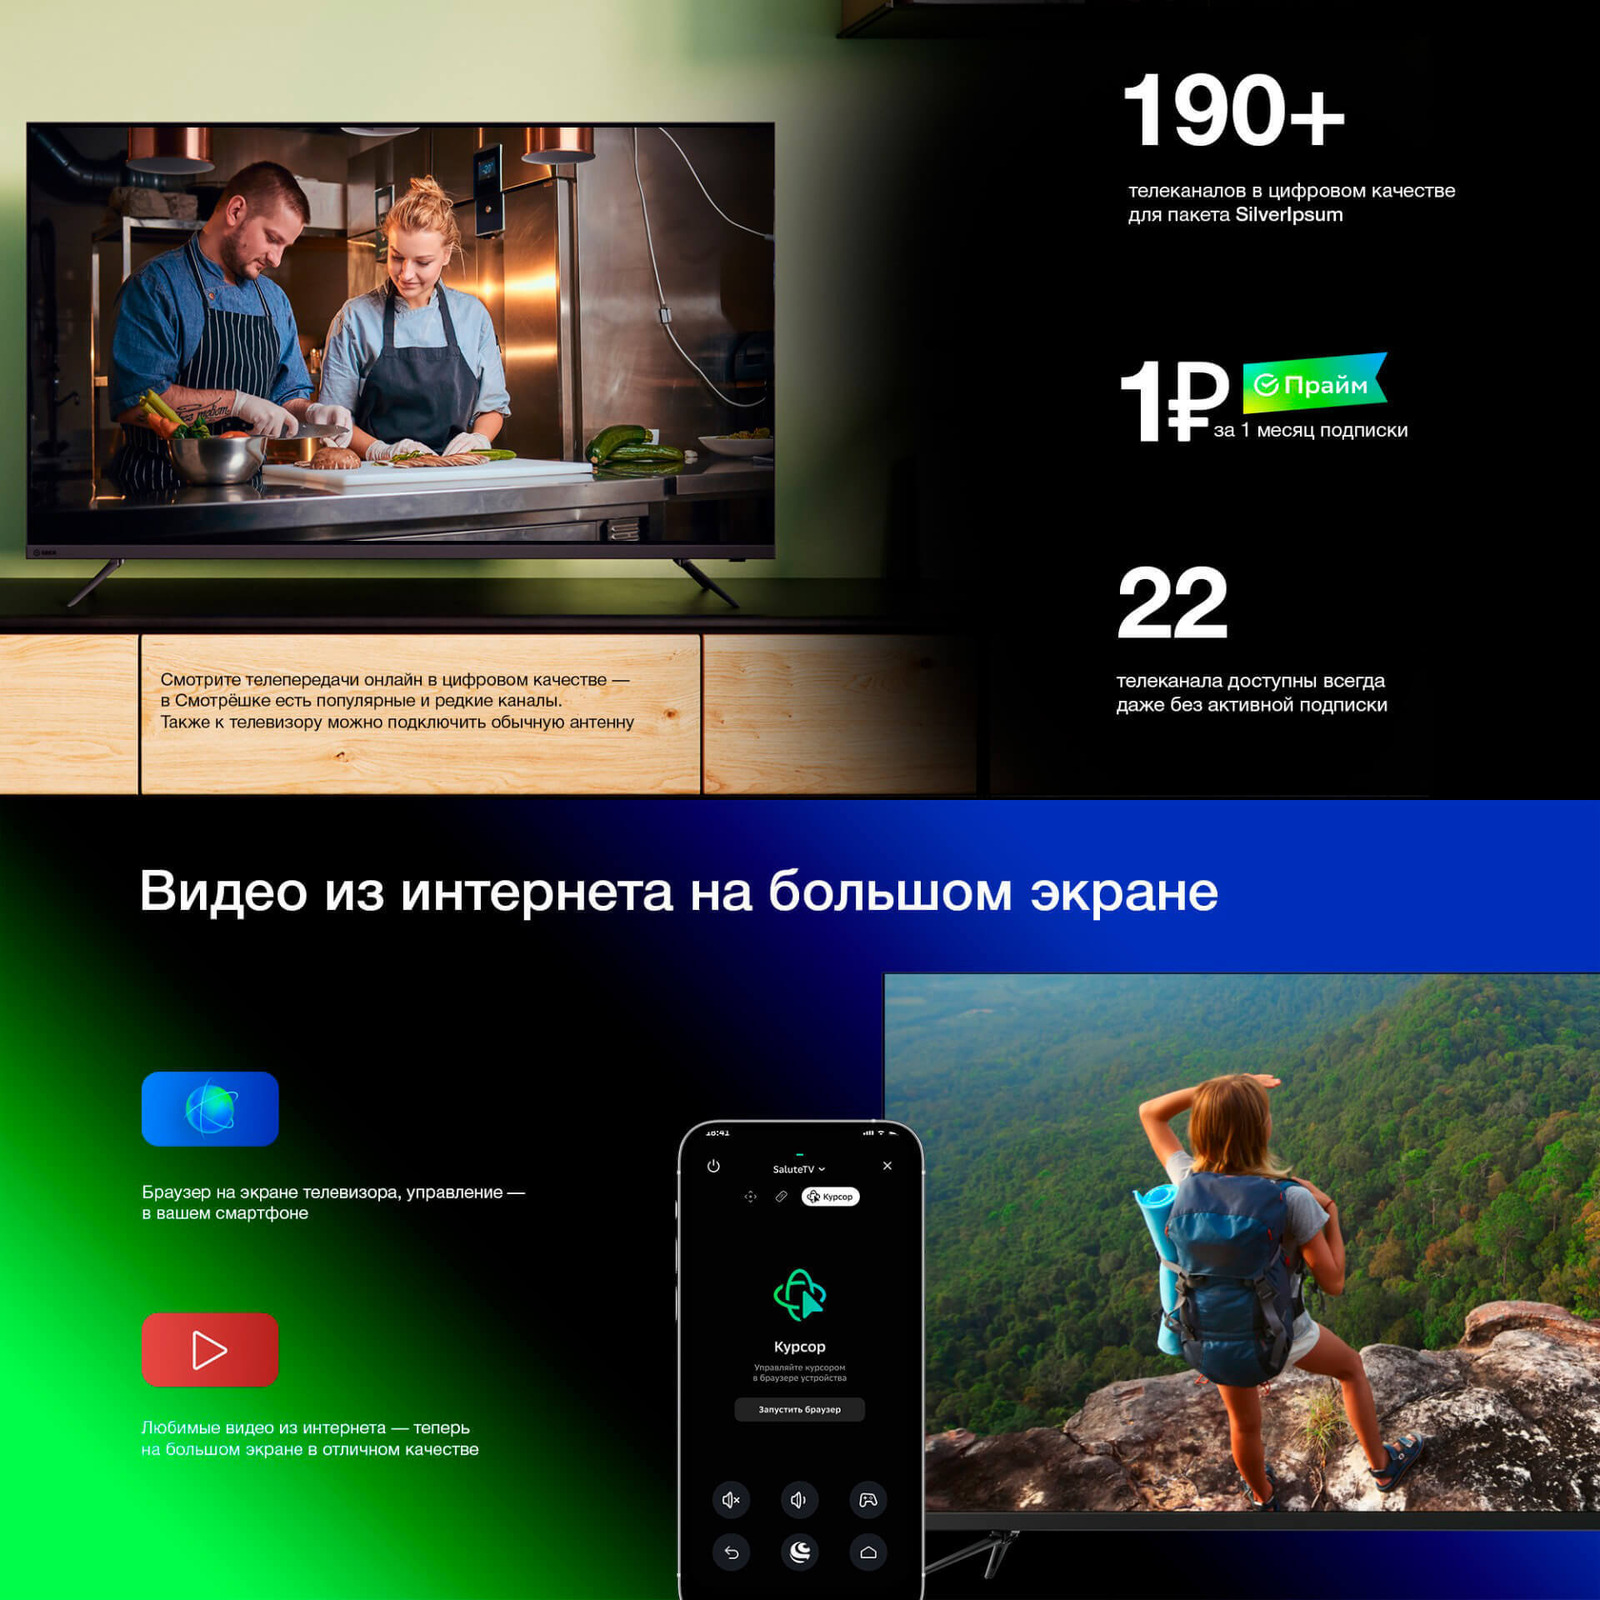 190+ каналов в цифровом качестве. 1 рубль за 1 месяц подписки. 22 телеканала доступны всгда даже без активной подписки. Видео из интернета на большом экране.